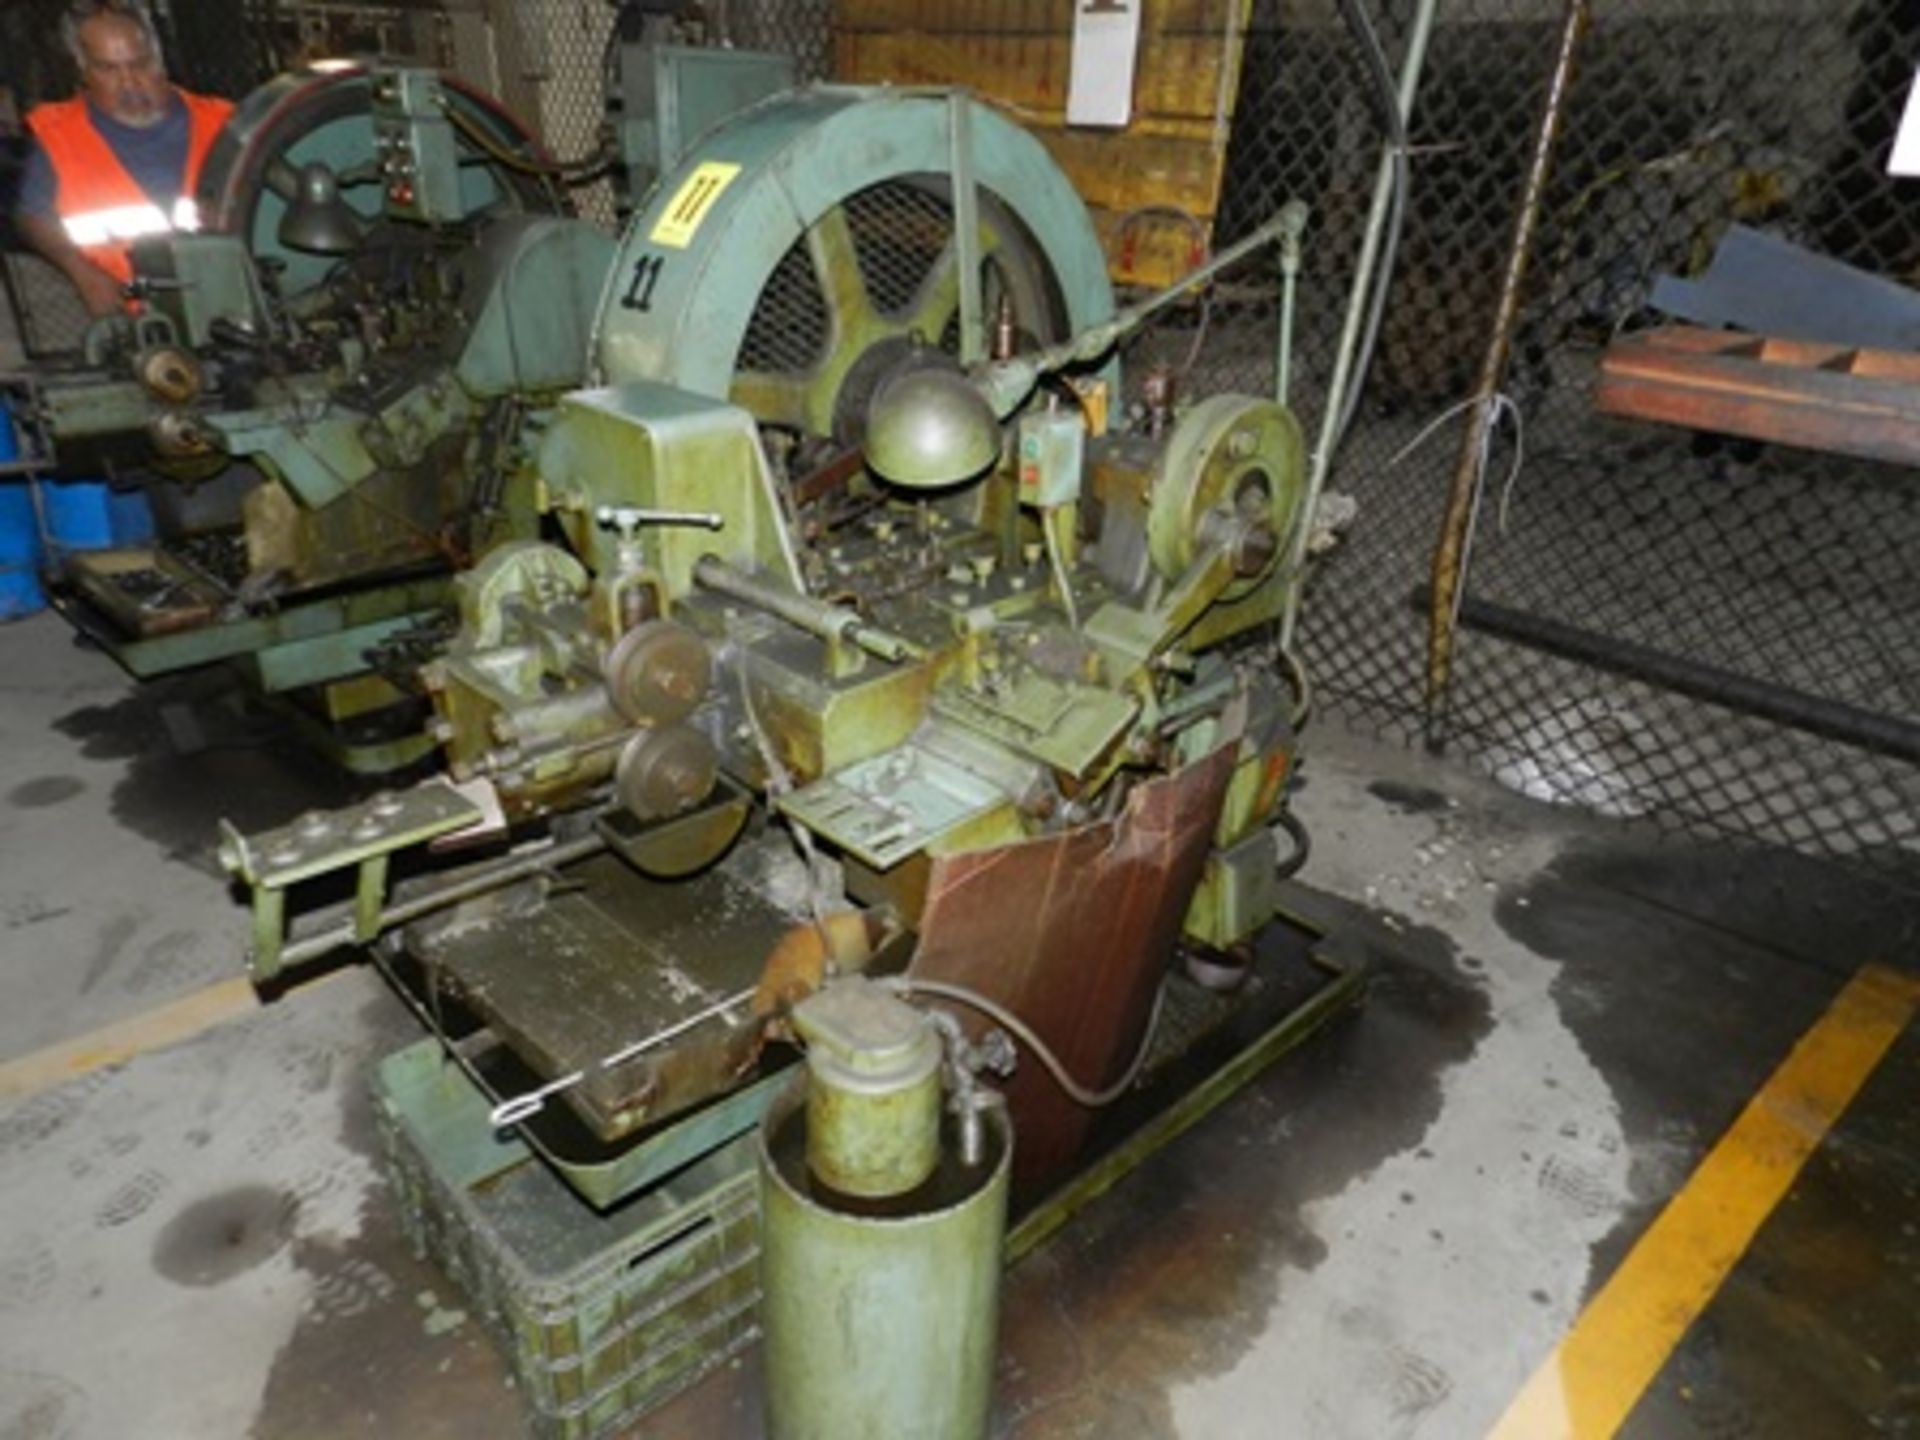 Máquina forjadora de remaches 3/16" marca Waterbury Farrel serie 27159513 con cabezadora en frio - Image 8 of 20